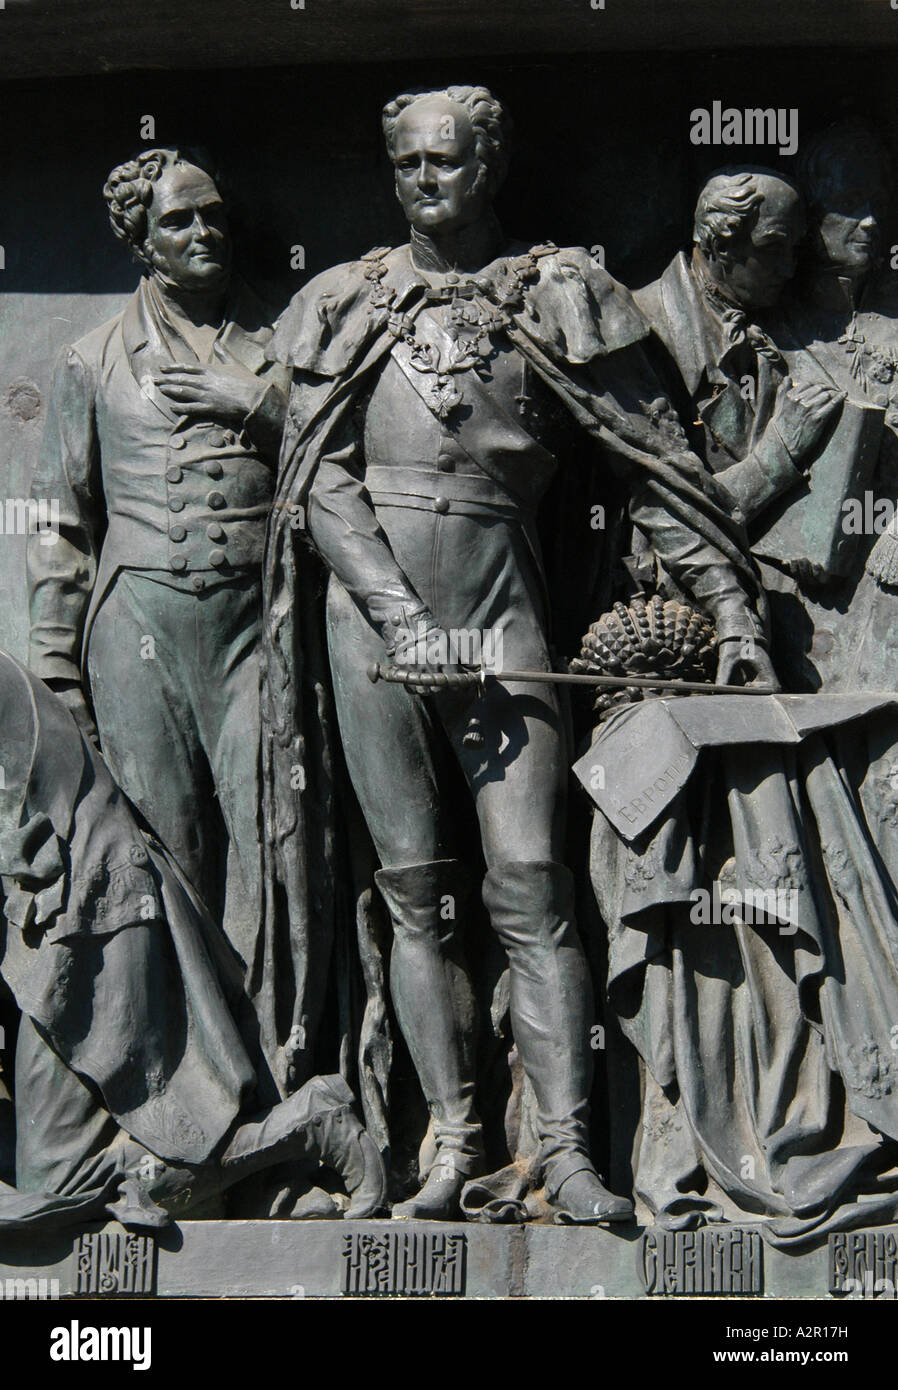 Le tsar Alexandre le premier. Détail du monument pour le millénaire de la Russie à Krasnodar, Russie Banque D'Images